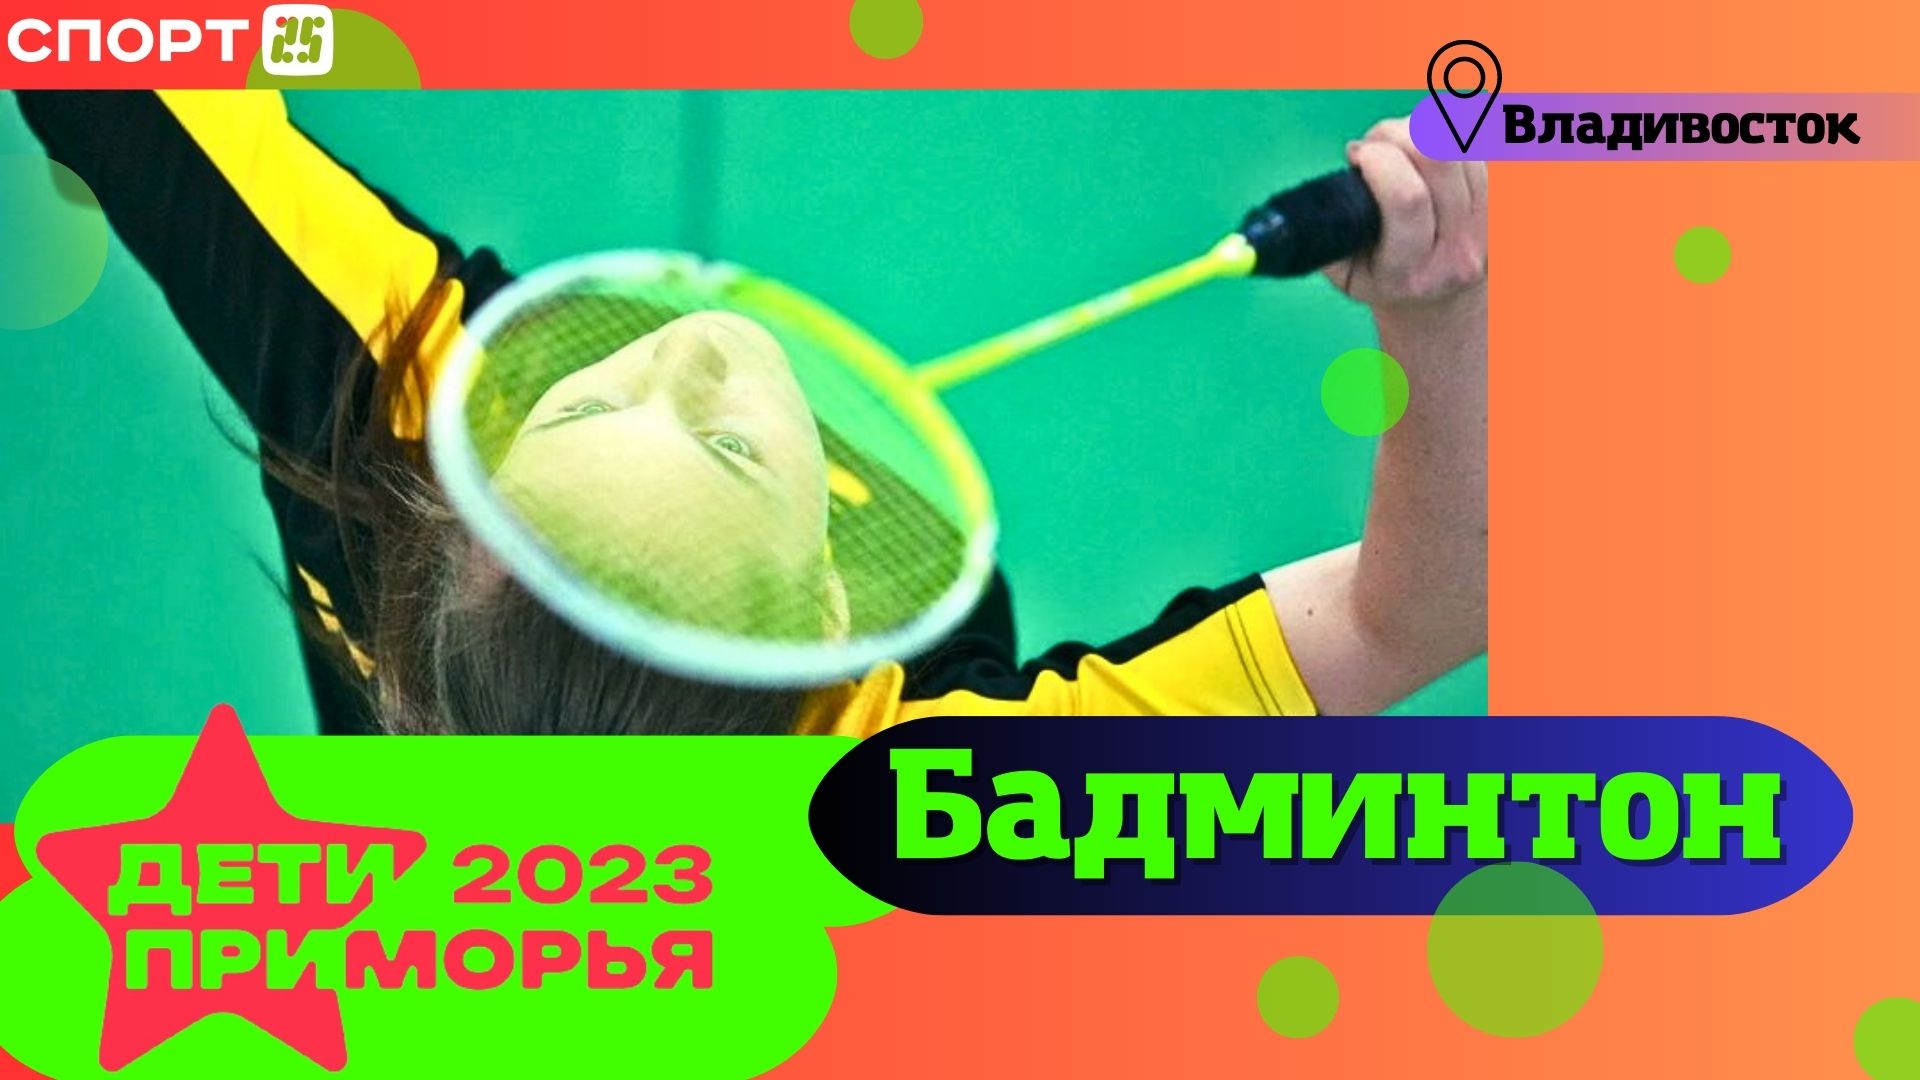 Бадминтон на Играх «Дети Приморья» 2023 во Владивостоке 3-4 июля / #ДетиПриморья